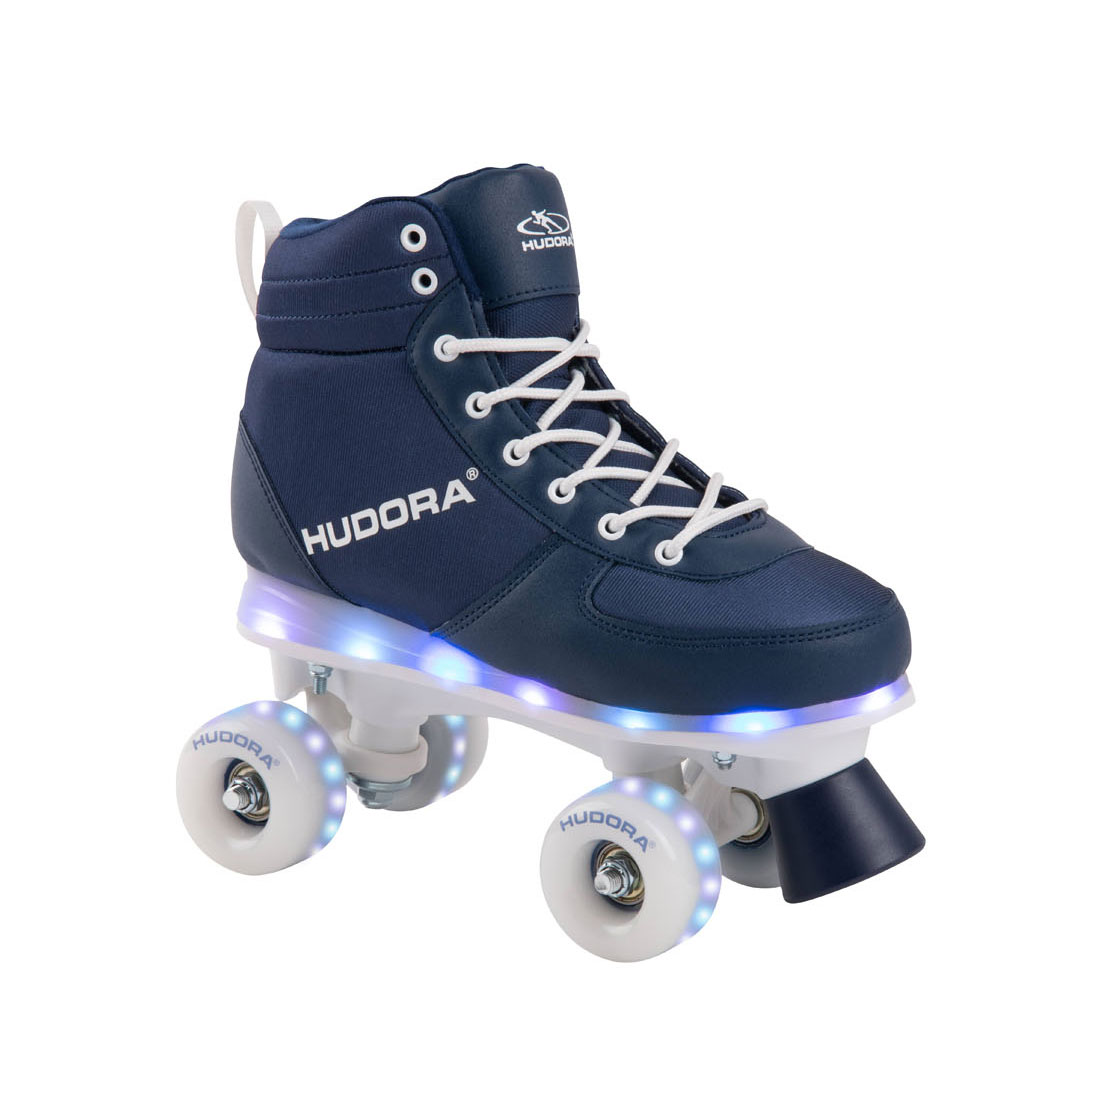 riem behang Geslagen vrachtwagen HUDORA Roller skates Blue with LED, size 33-34 | Thimble Toys